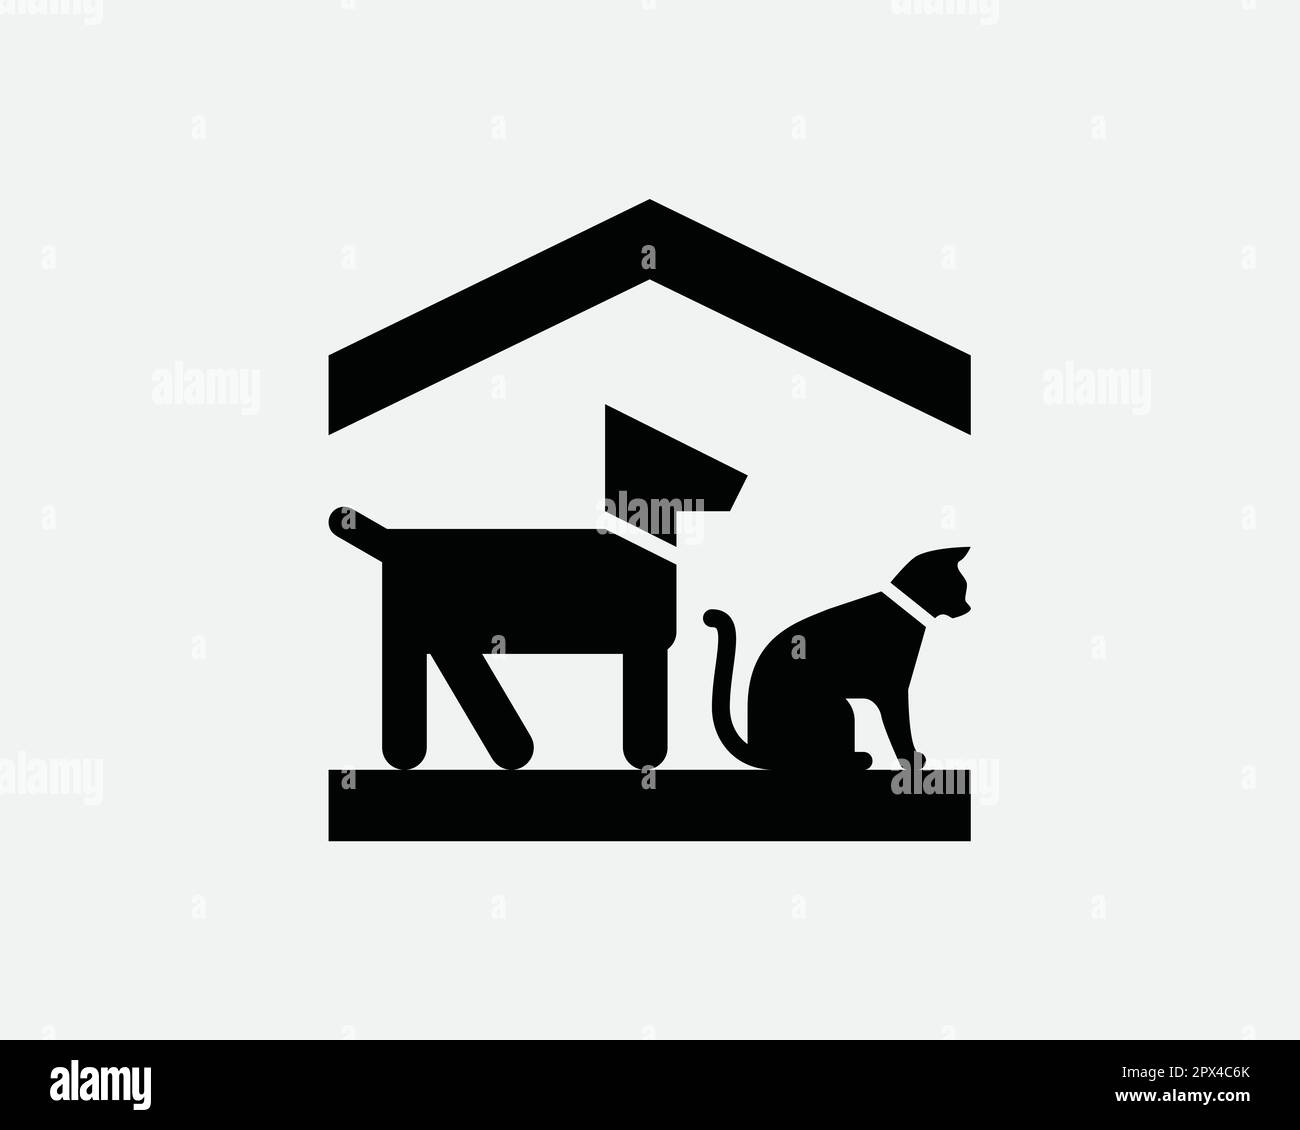 Icône abri pour animaux. Chien chiens Cat Cats Rescue House symbole de sécurité à domicile. Panneau de sélection pour animaux de compagnie d'intérieur vecteur Illustration graphique Clipart Crucut Illustration de Vecteur